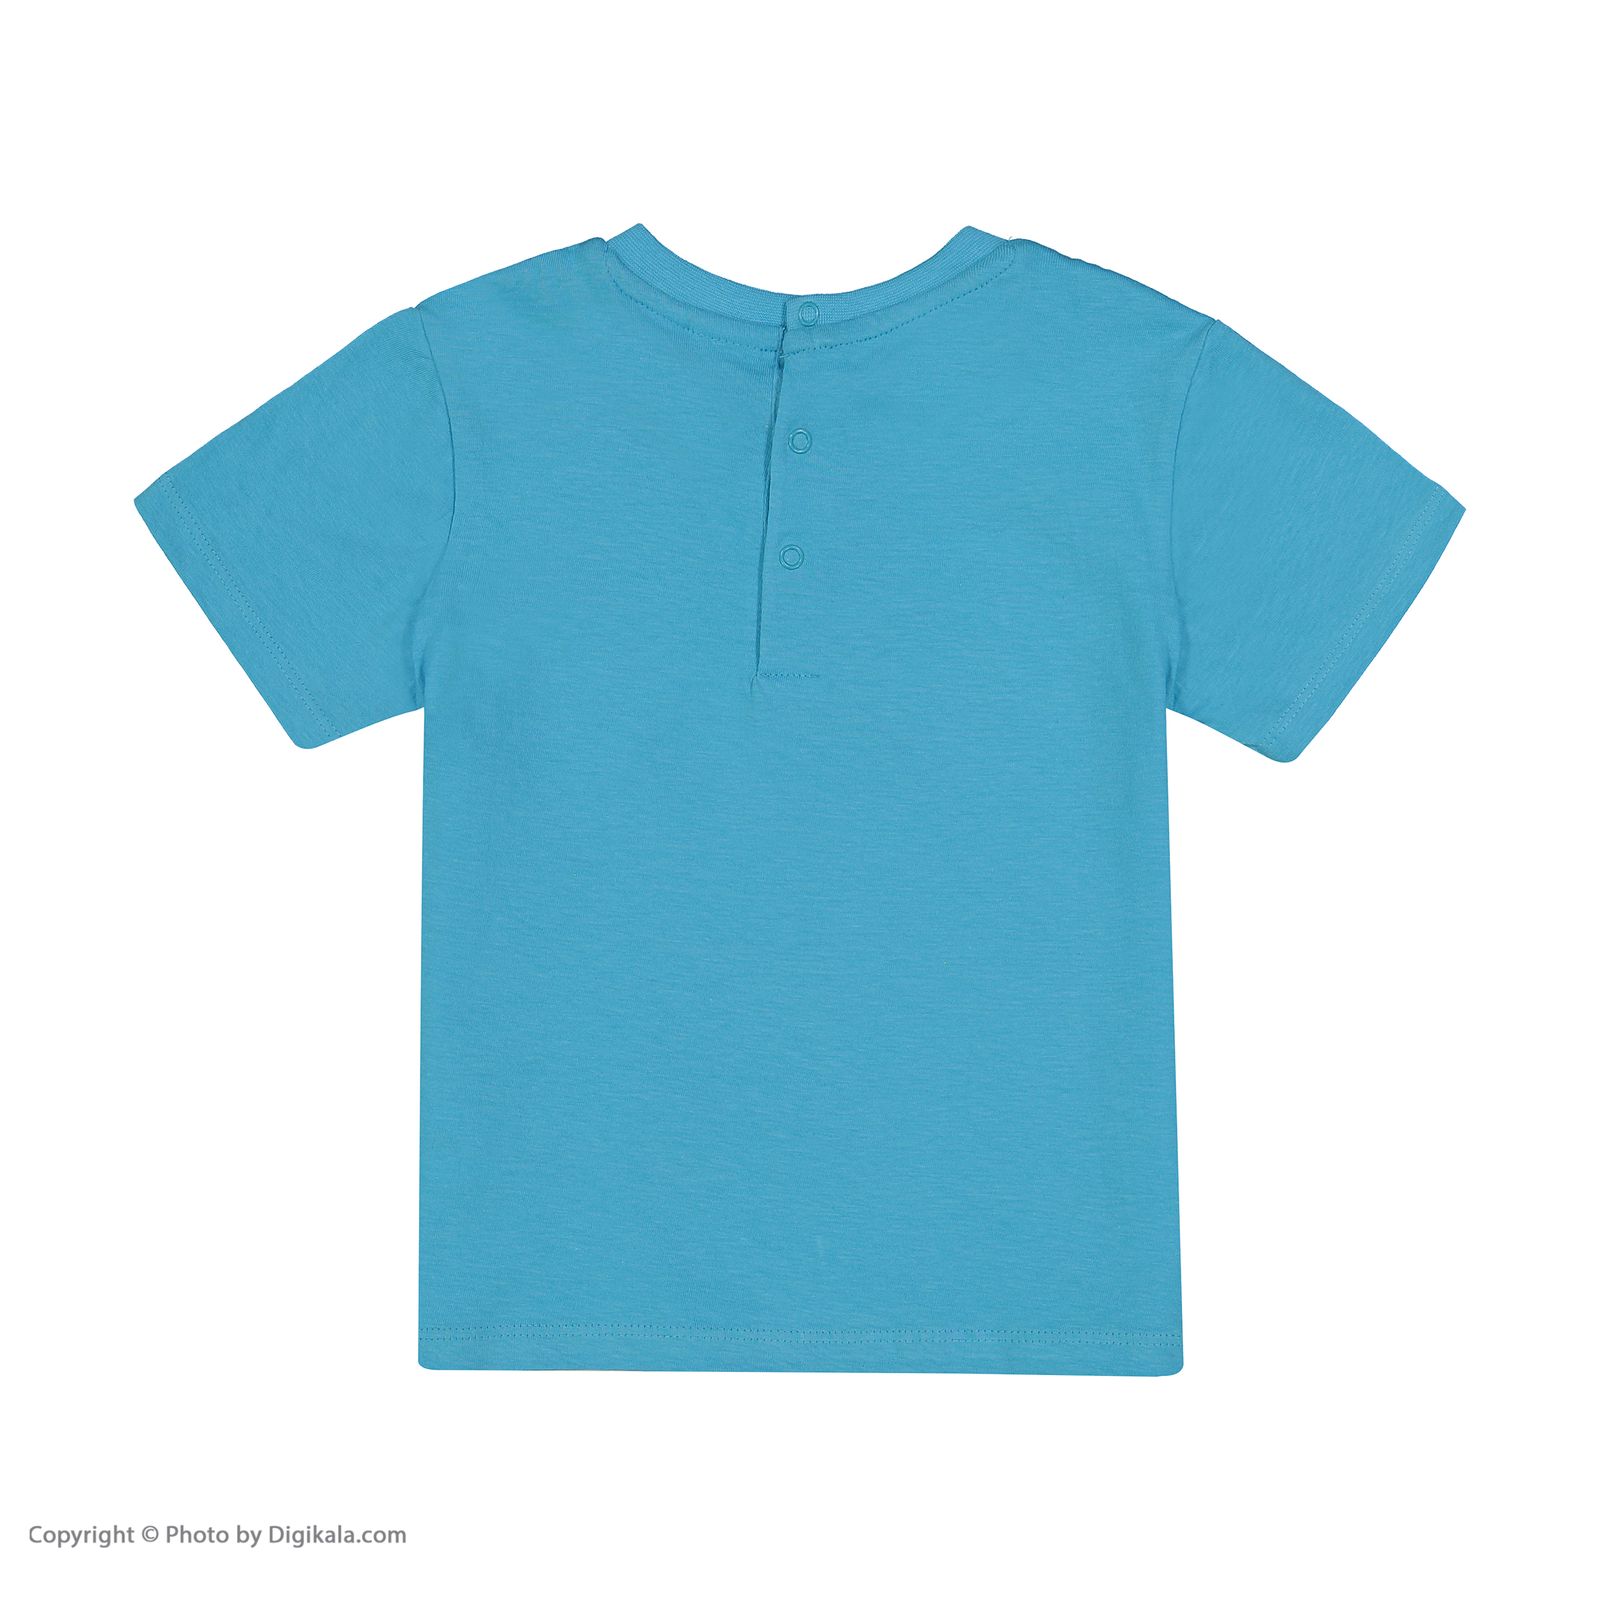 ست تی شرت و شلوارک نوزادی پسرانه بلوکیدز مدل 5139464 - آبي - 4